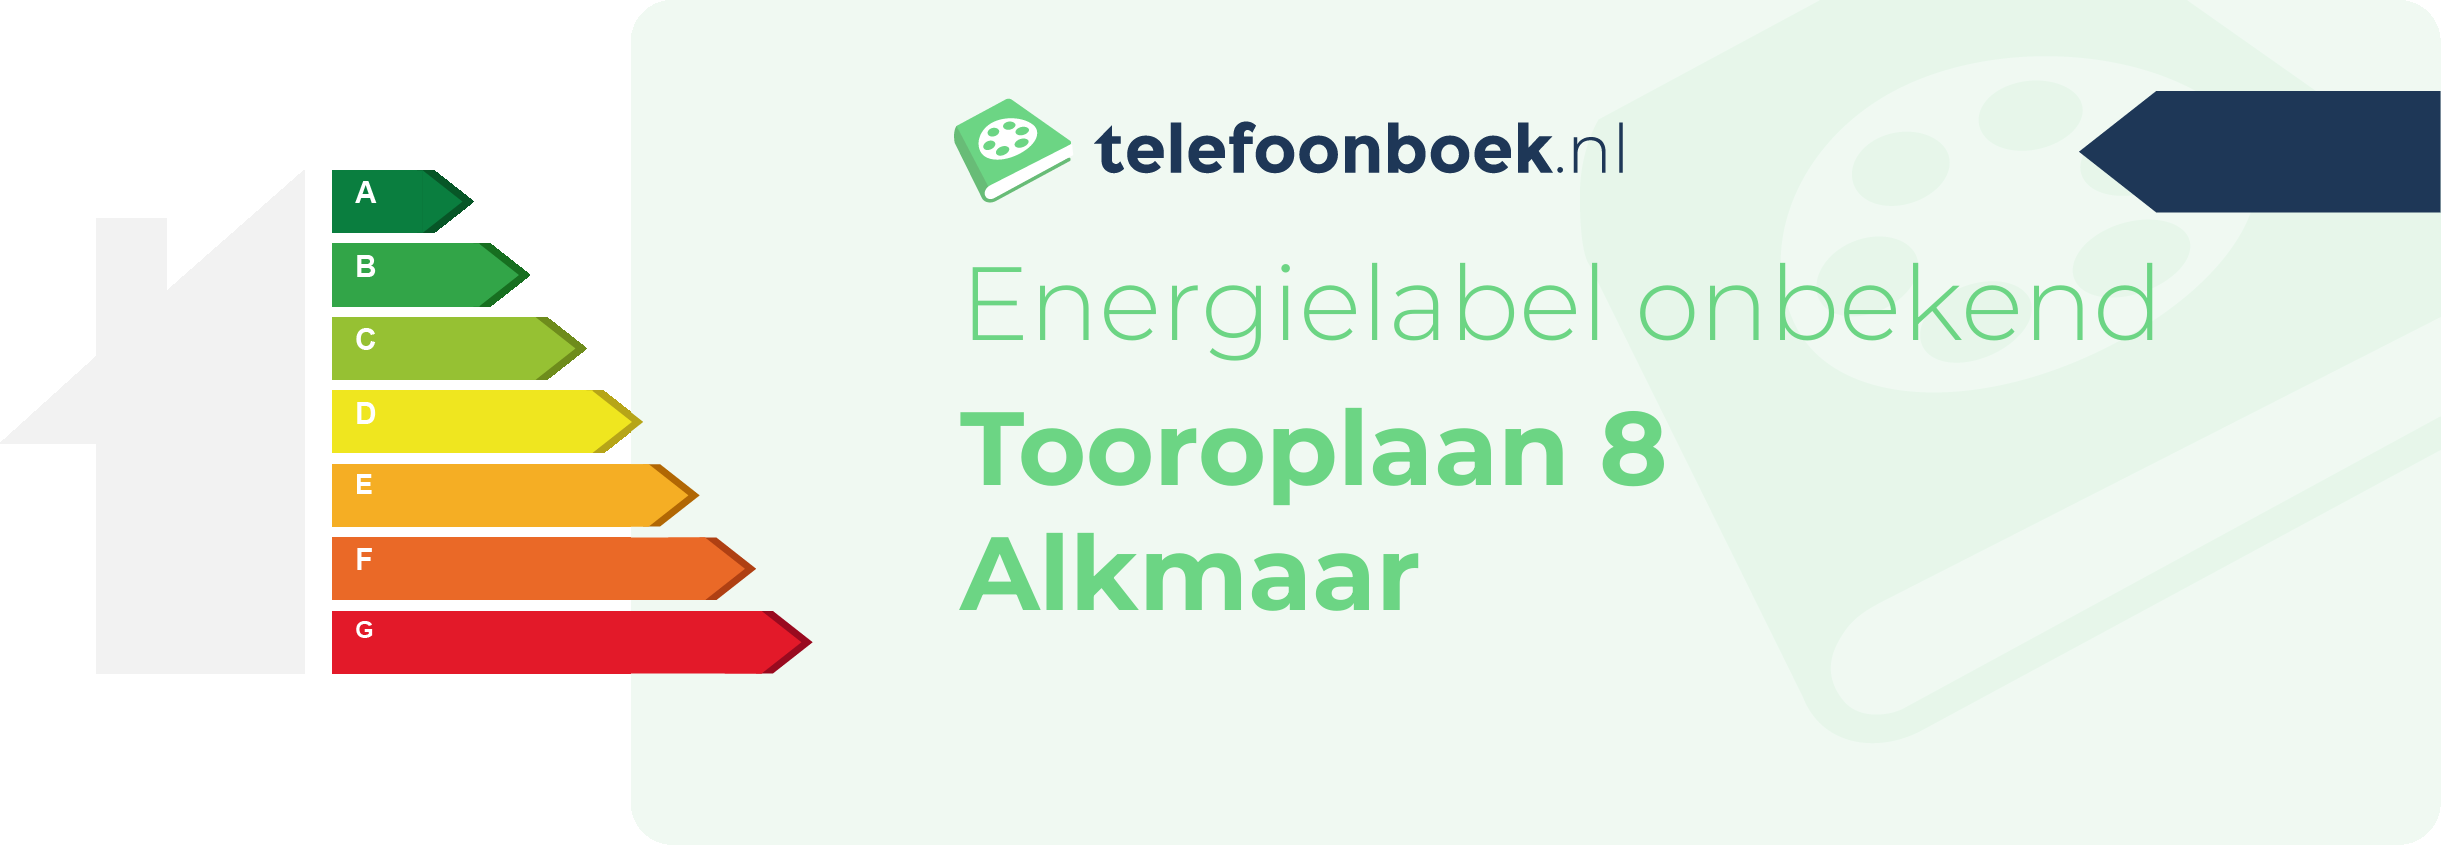 Energielabel Tooroplaan 8 Alkmaar